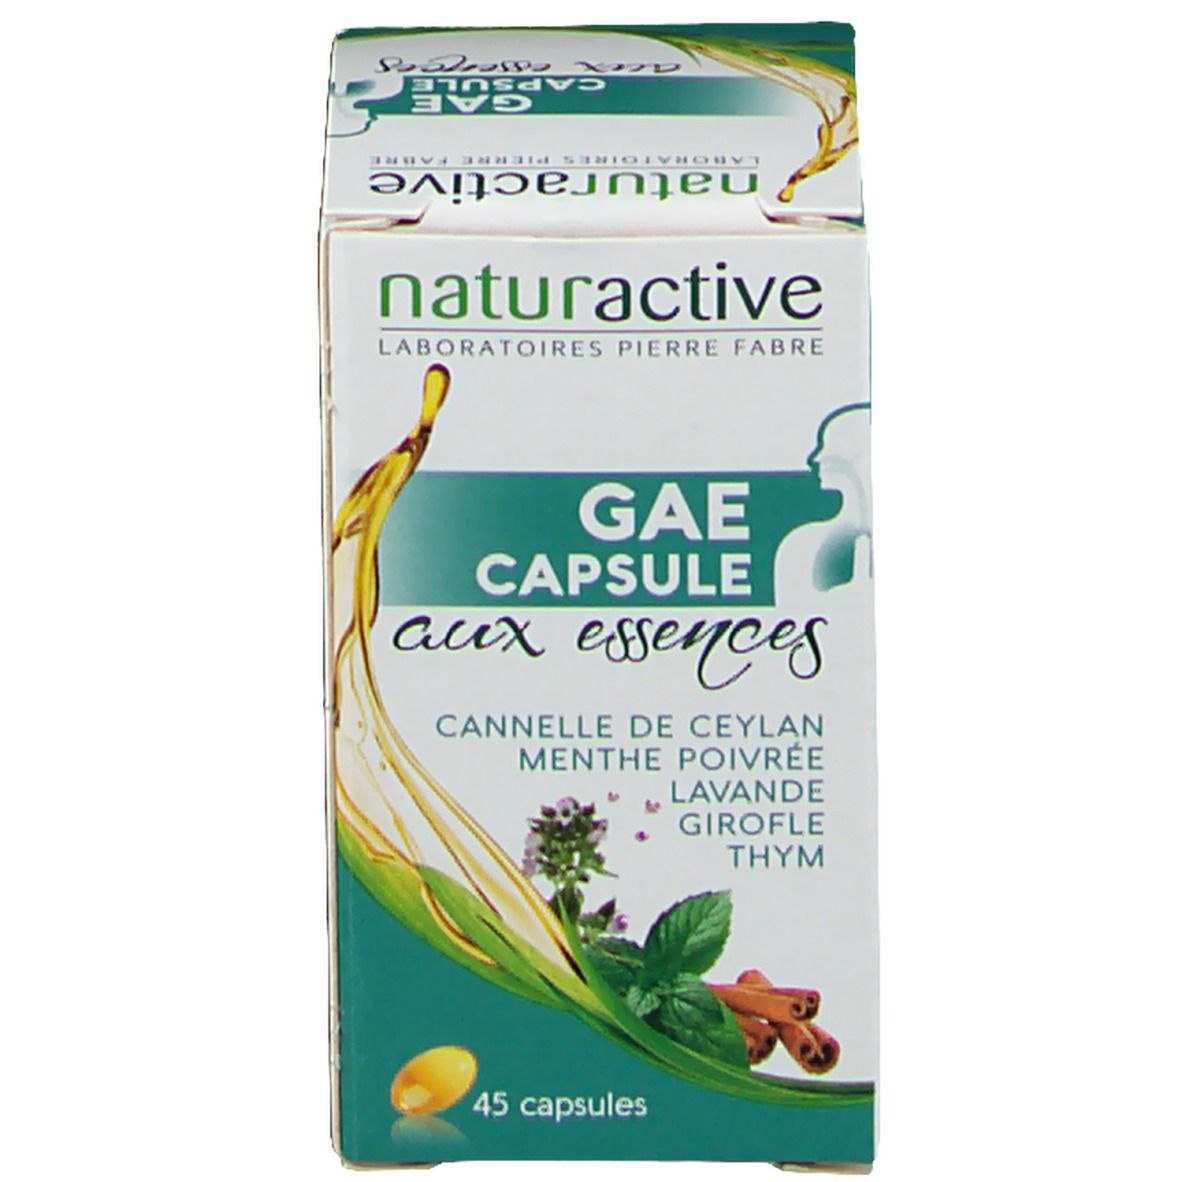 Naturactive G.A.E. CAPSULE aux essences